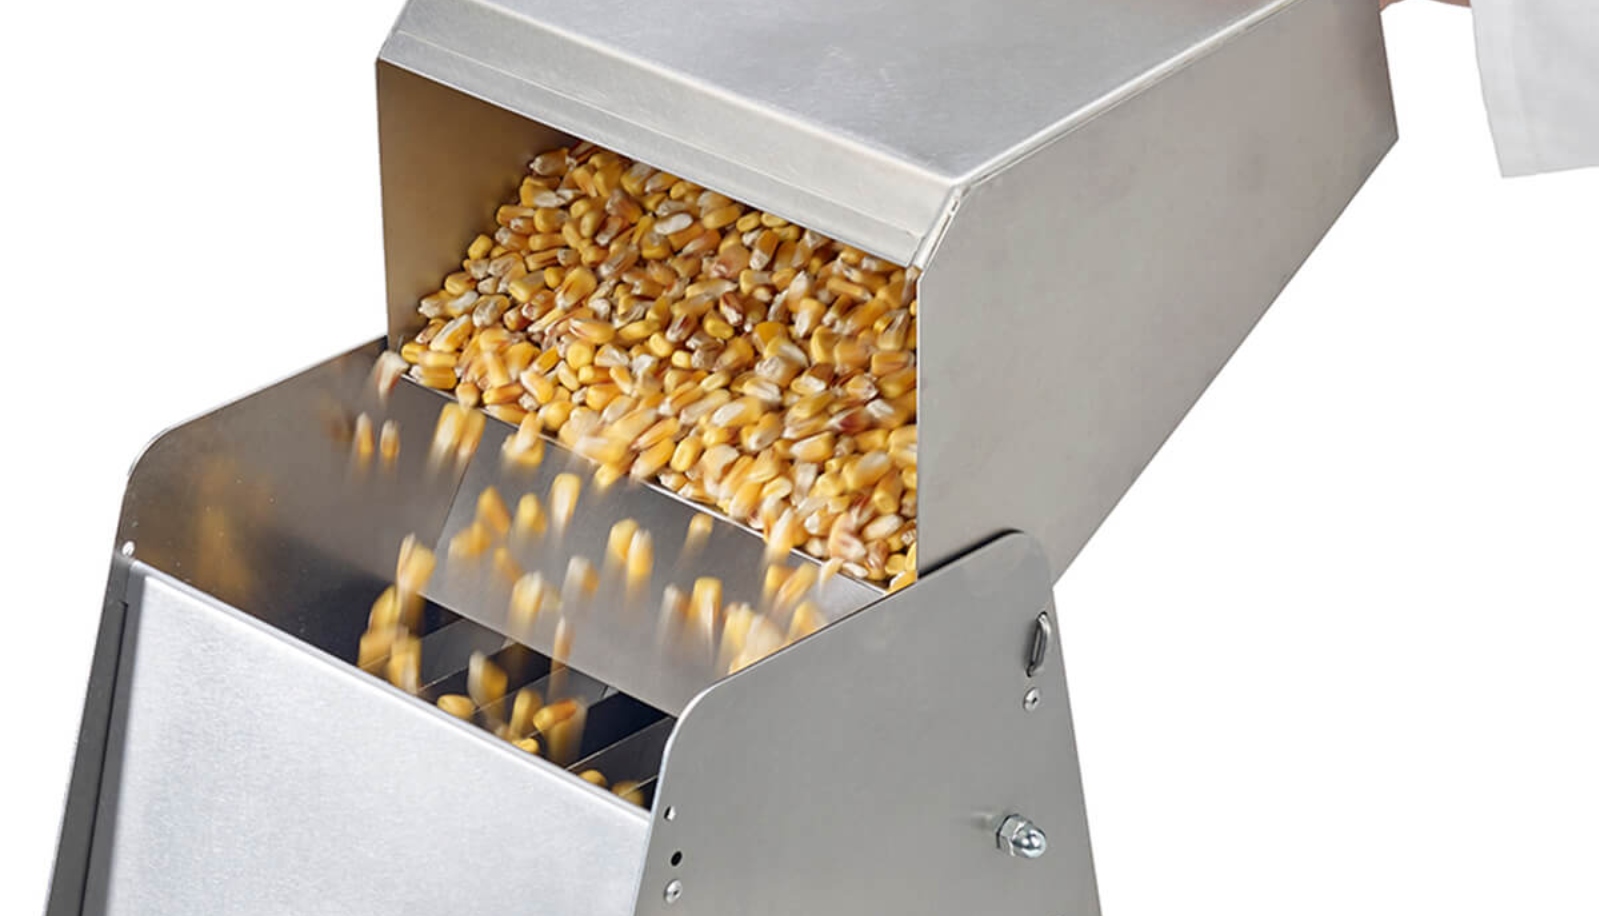 Grain sample dividers